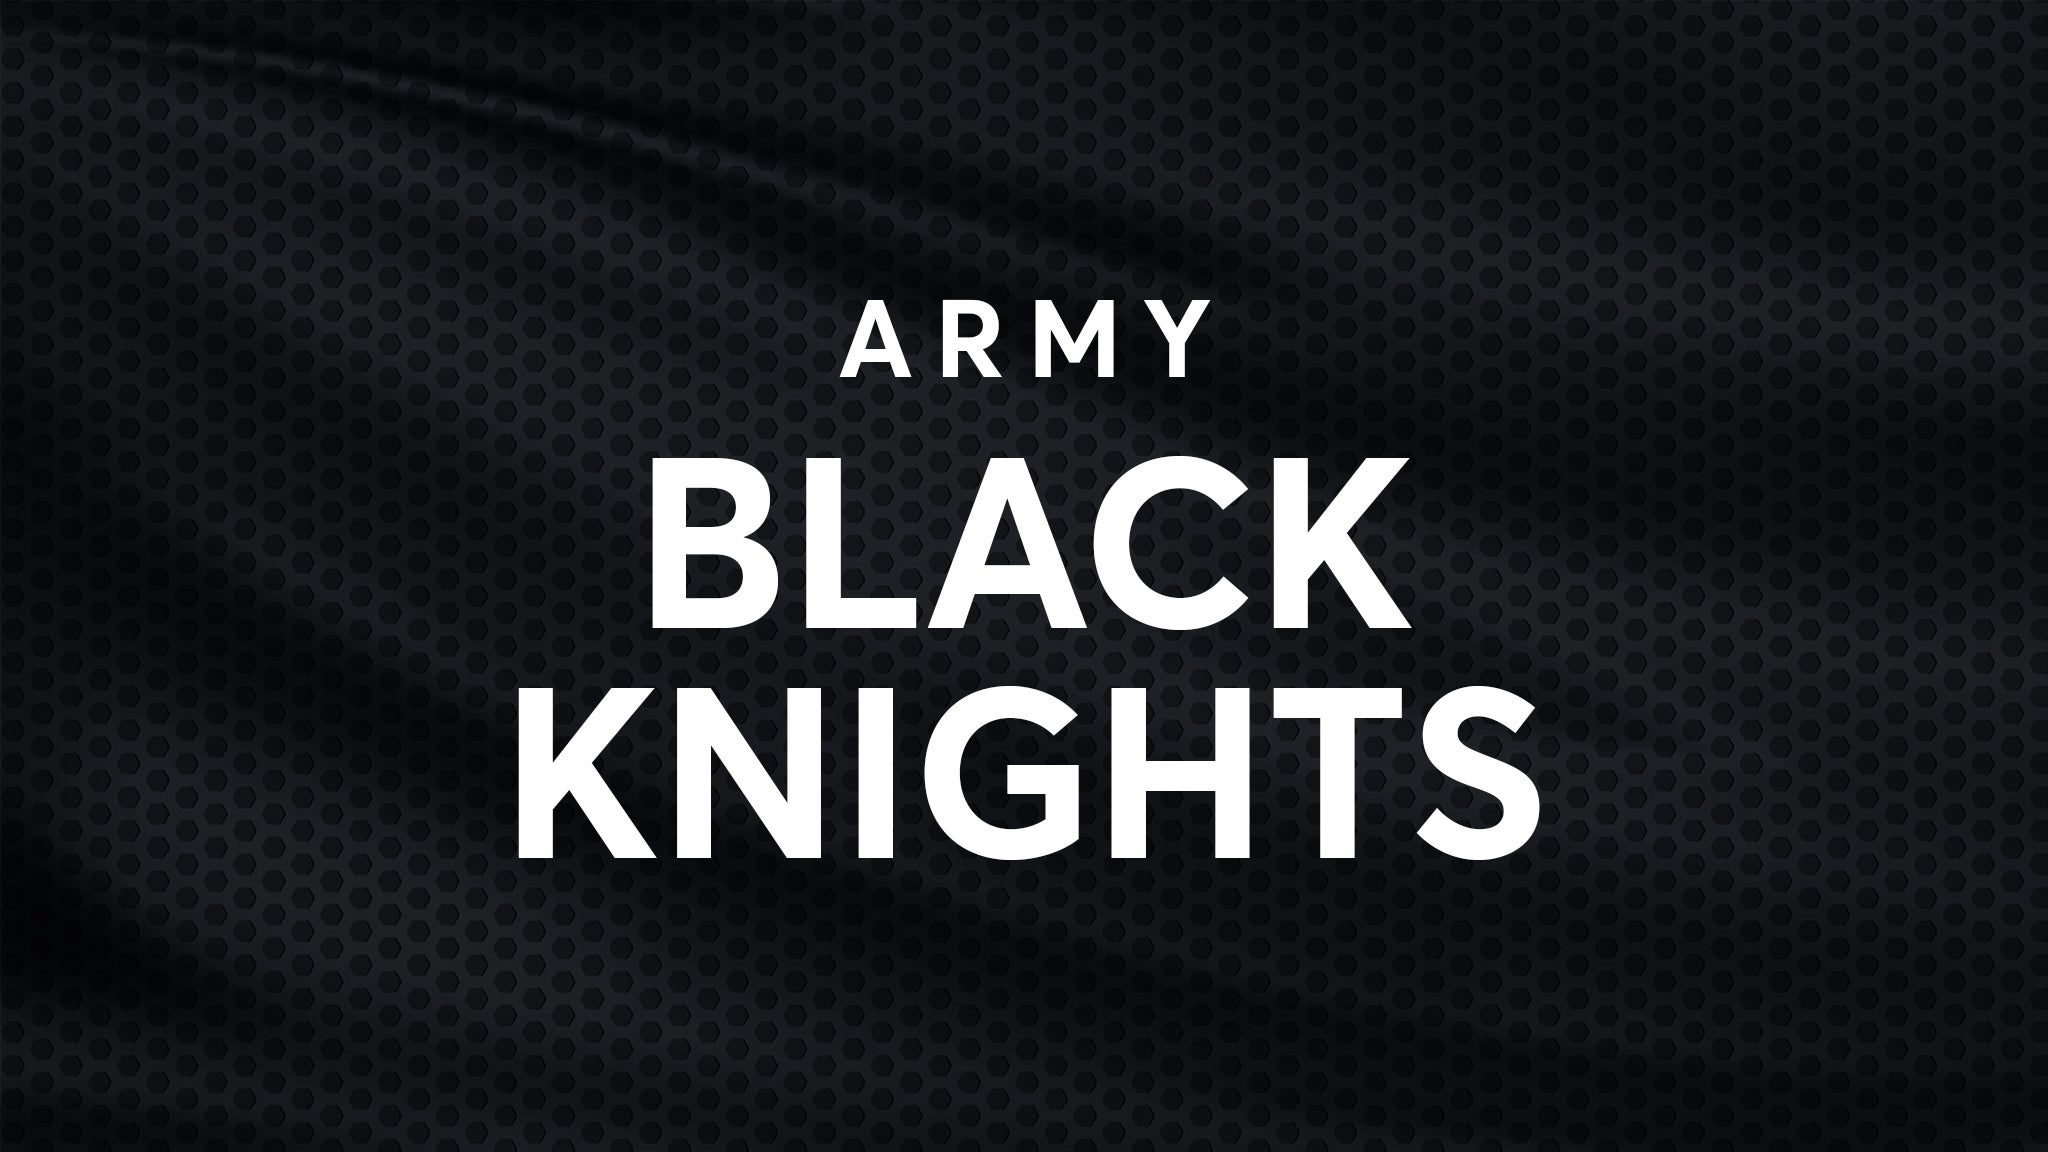 Army Black Knights Football vs. UAB Blazers Football